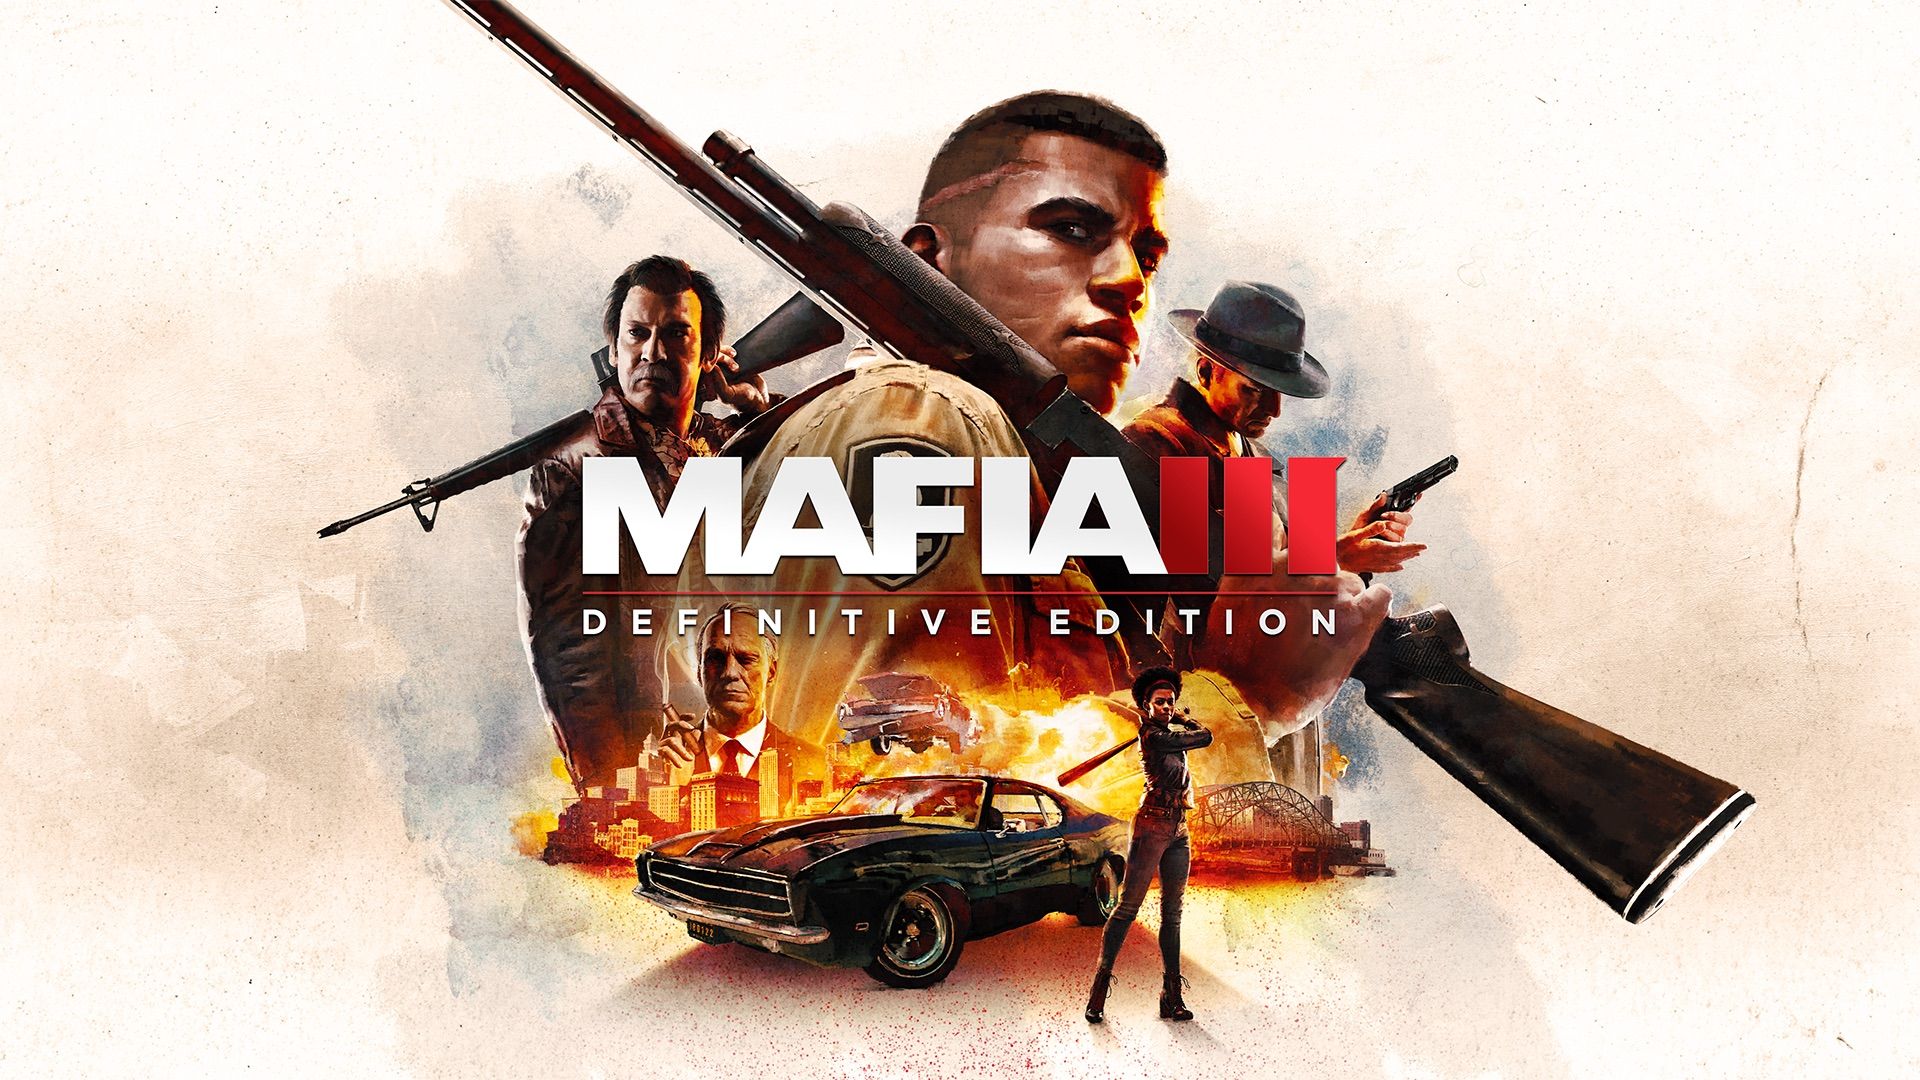 Mafia: Definitive Edition - PlayStation 4, PlayStation 4